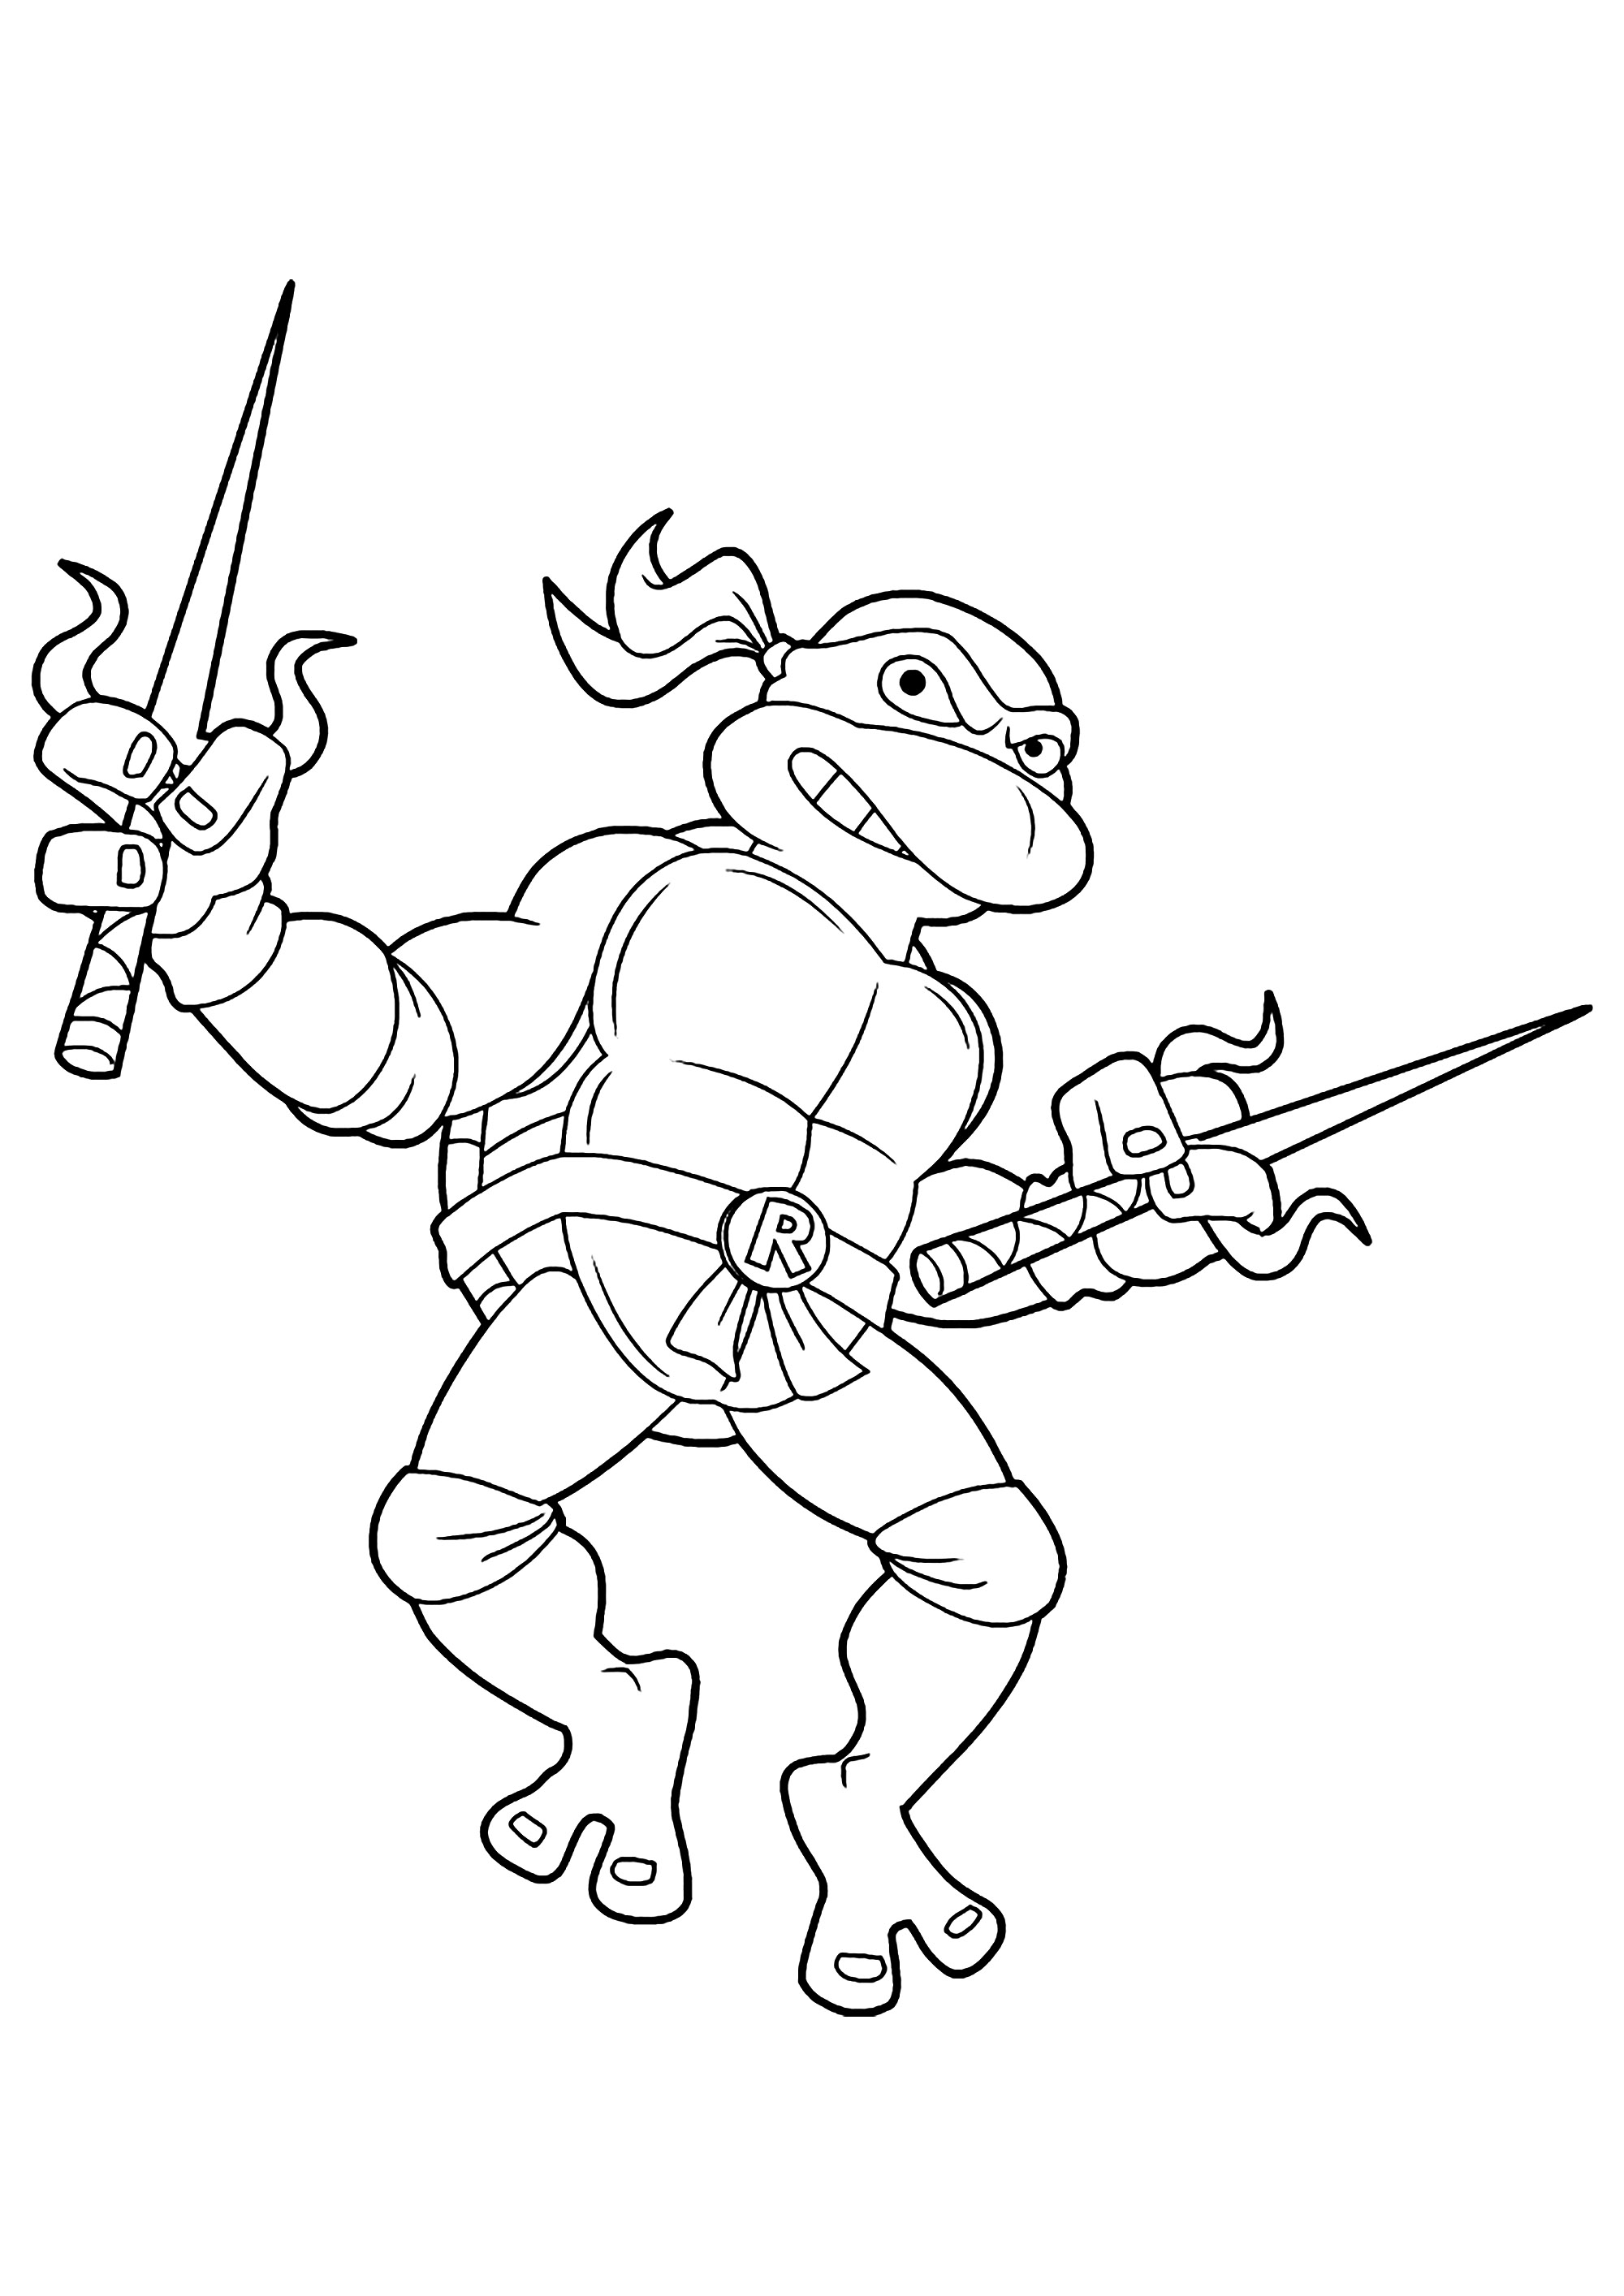 Ninja Turtles : Raphael ('Raph')